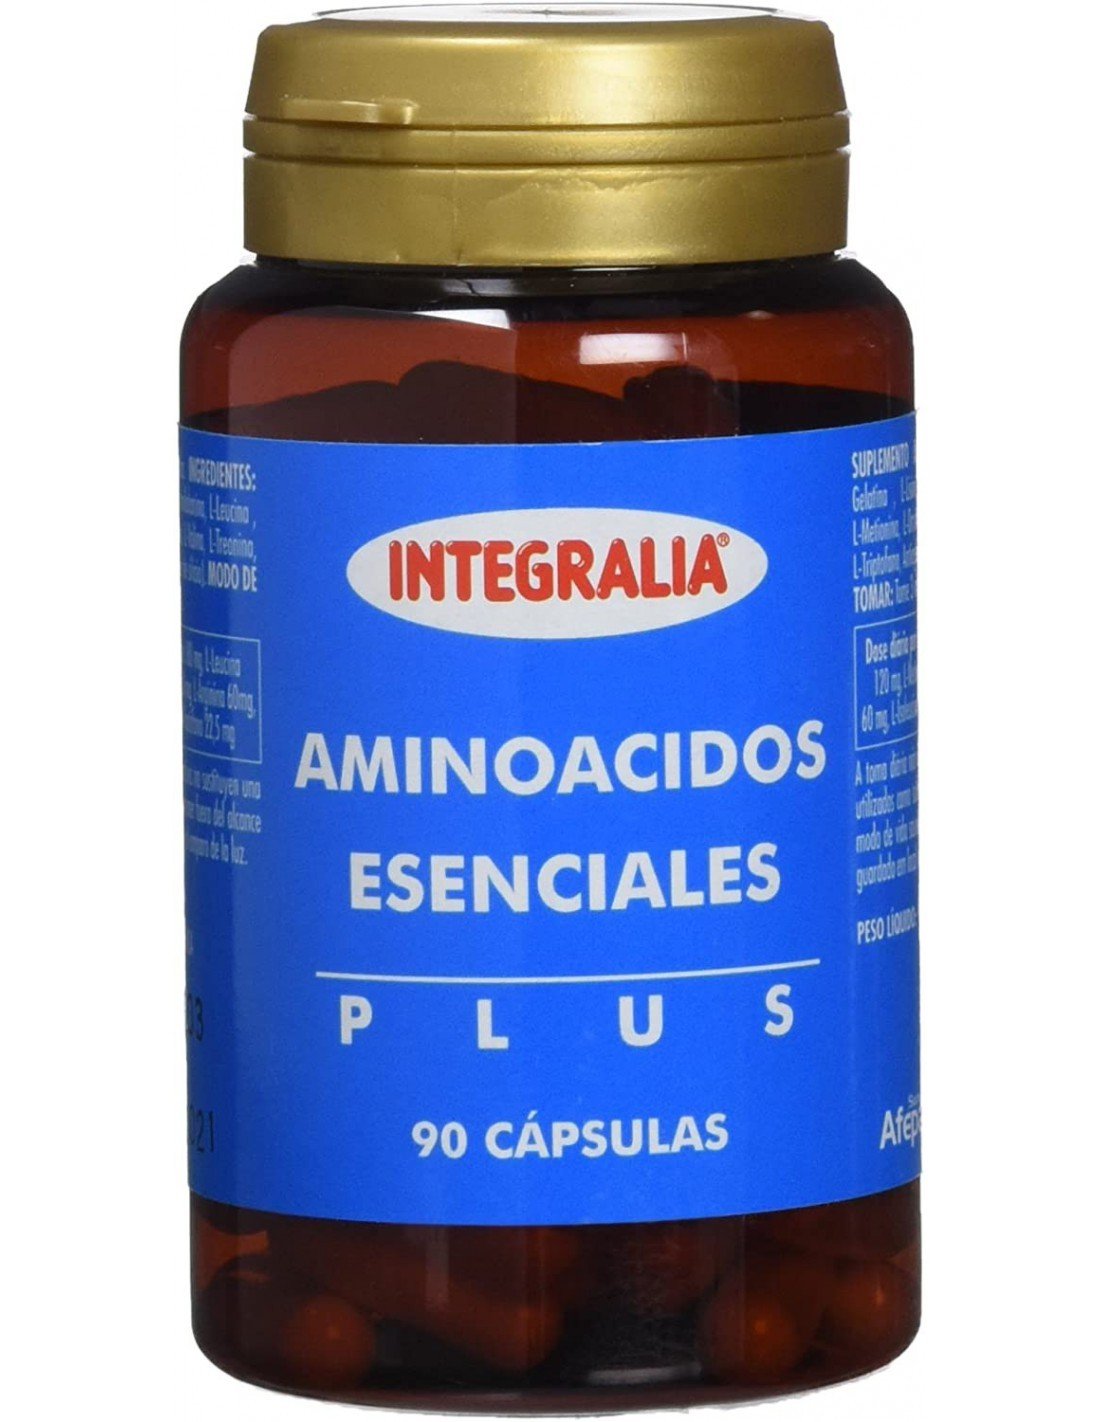 Integralia Aminoácidos esenciales Plus, 90 cápsulas.